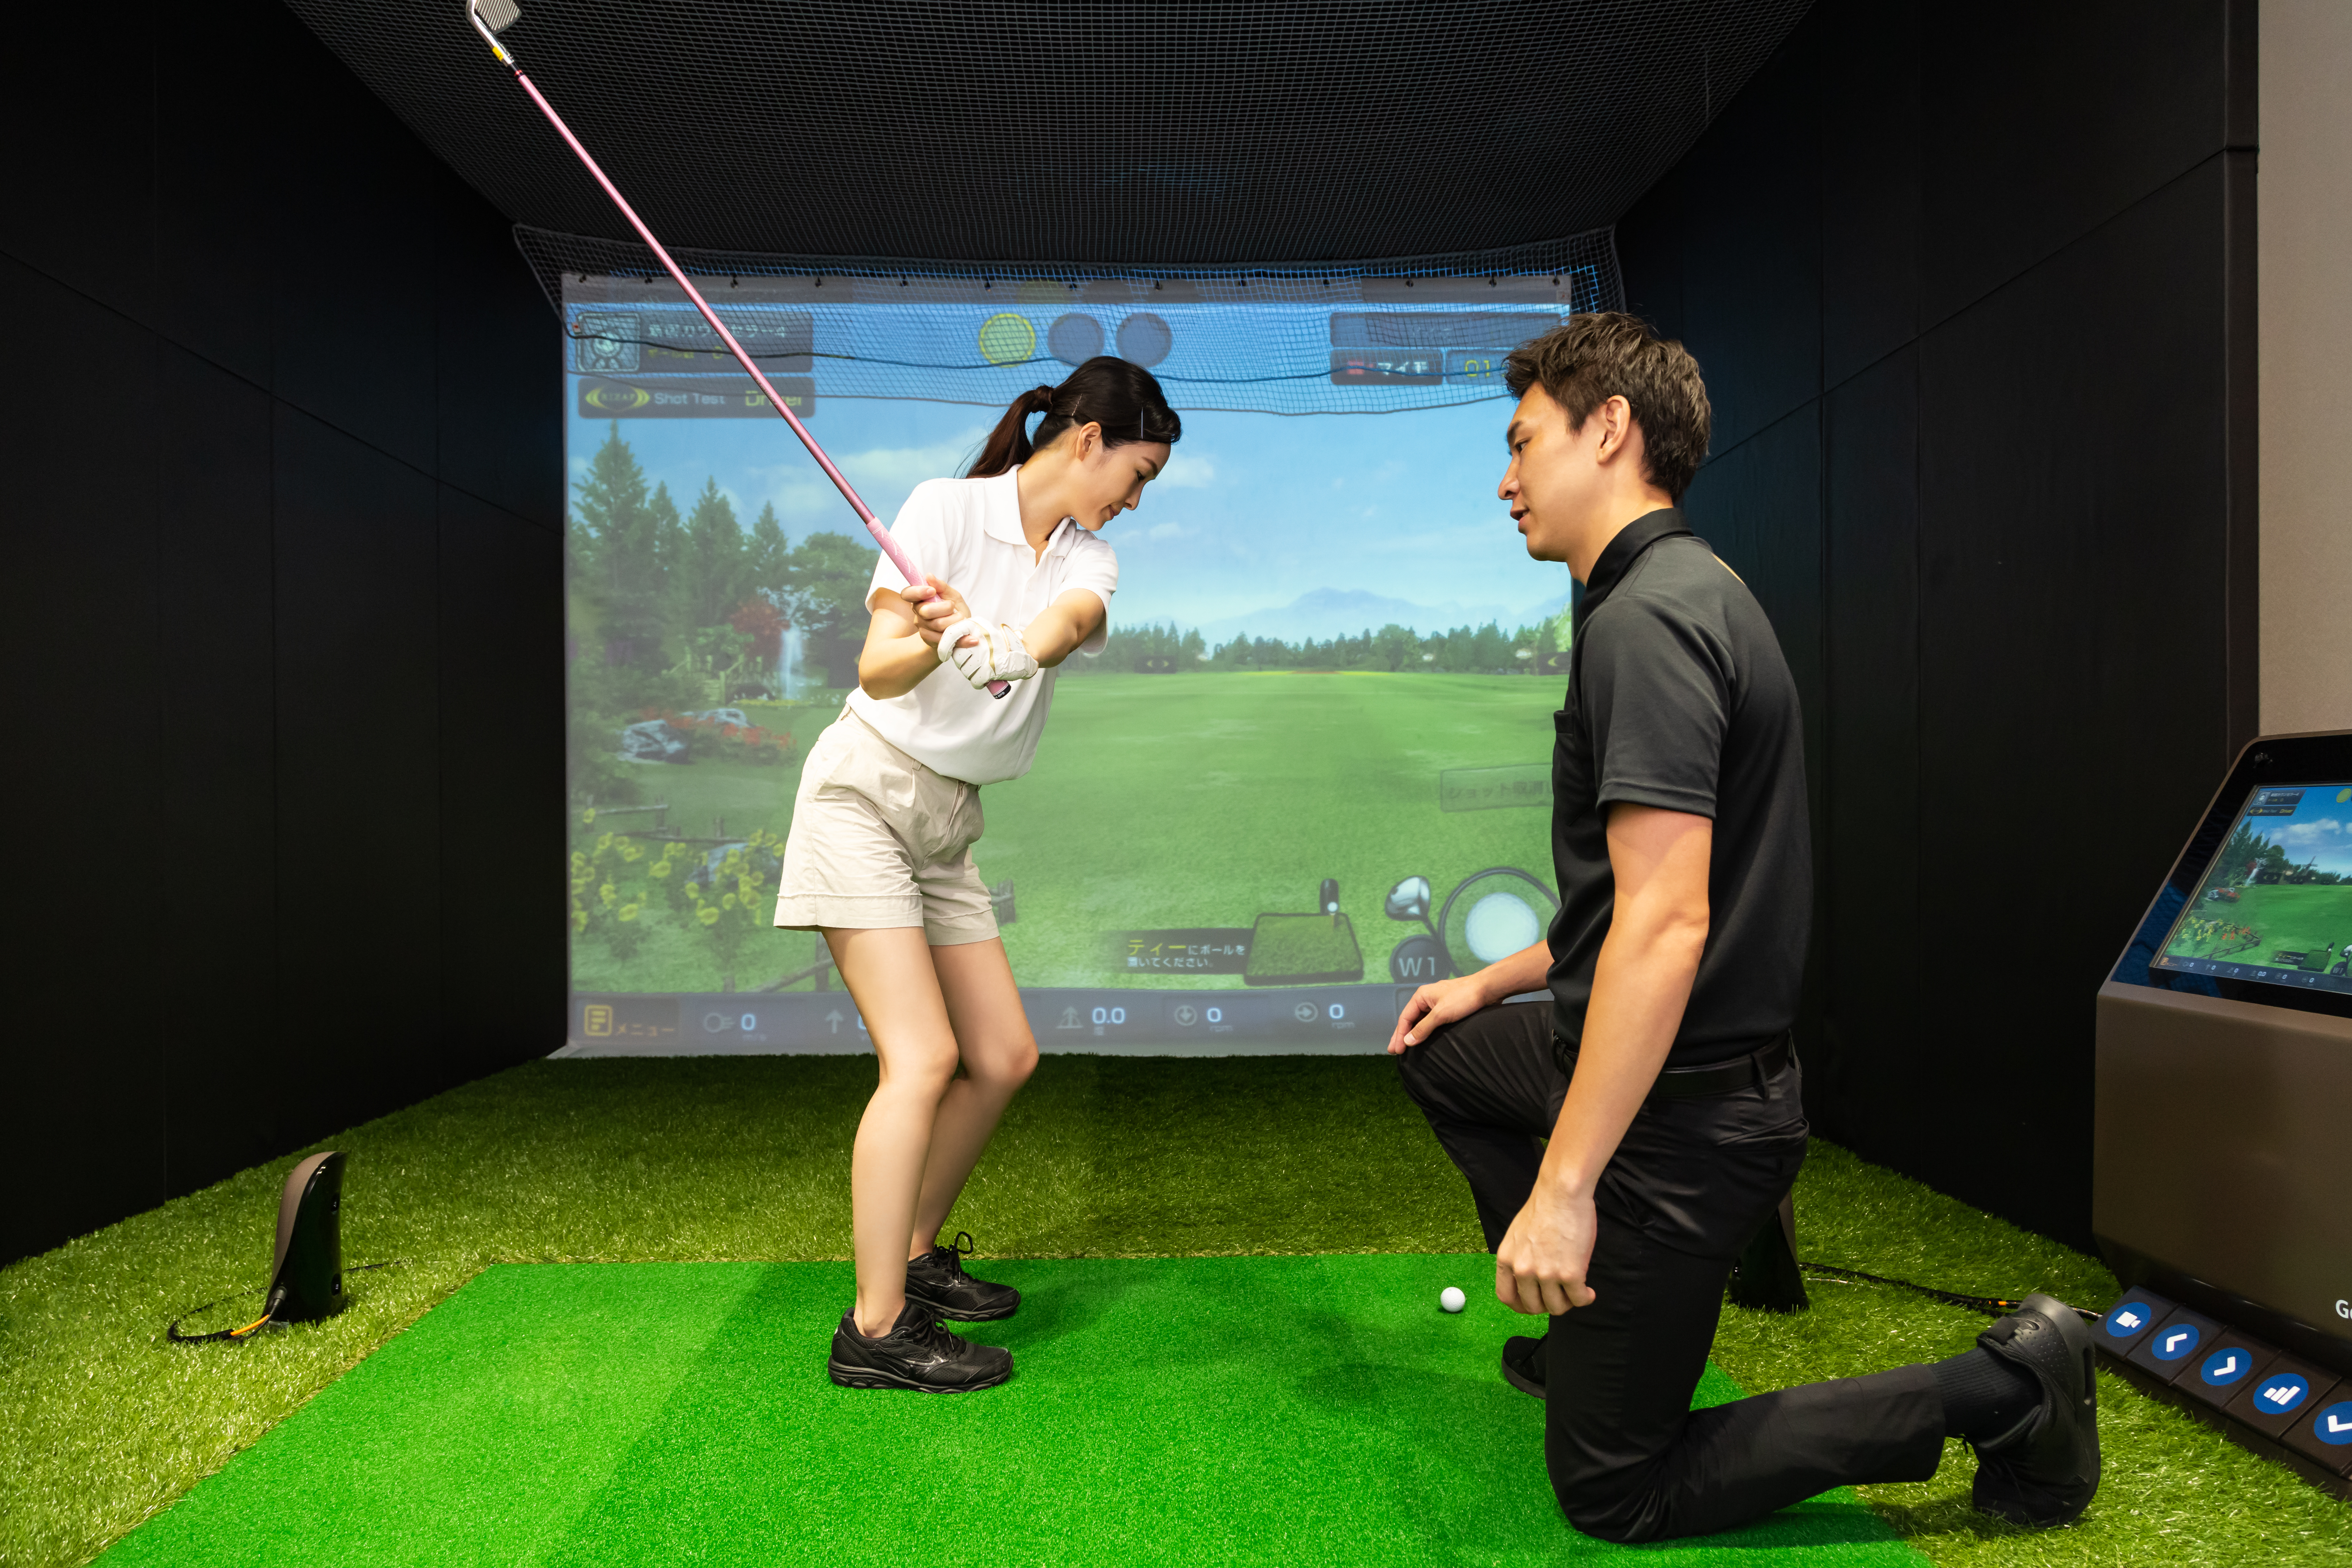 【厳選】千葉県内でおすすめの人気ゴルフスクールを徹底比較2019